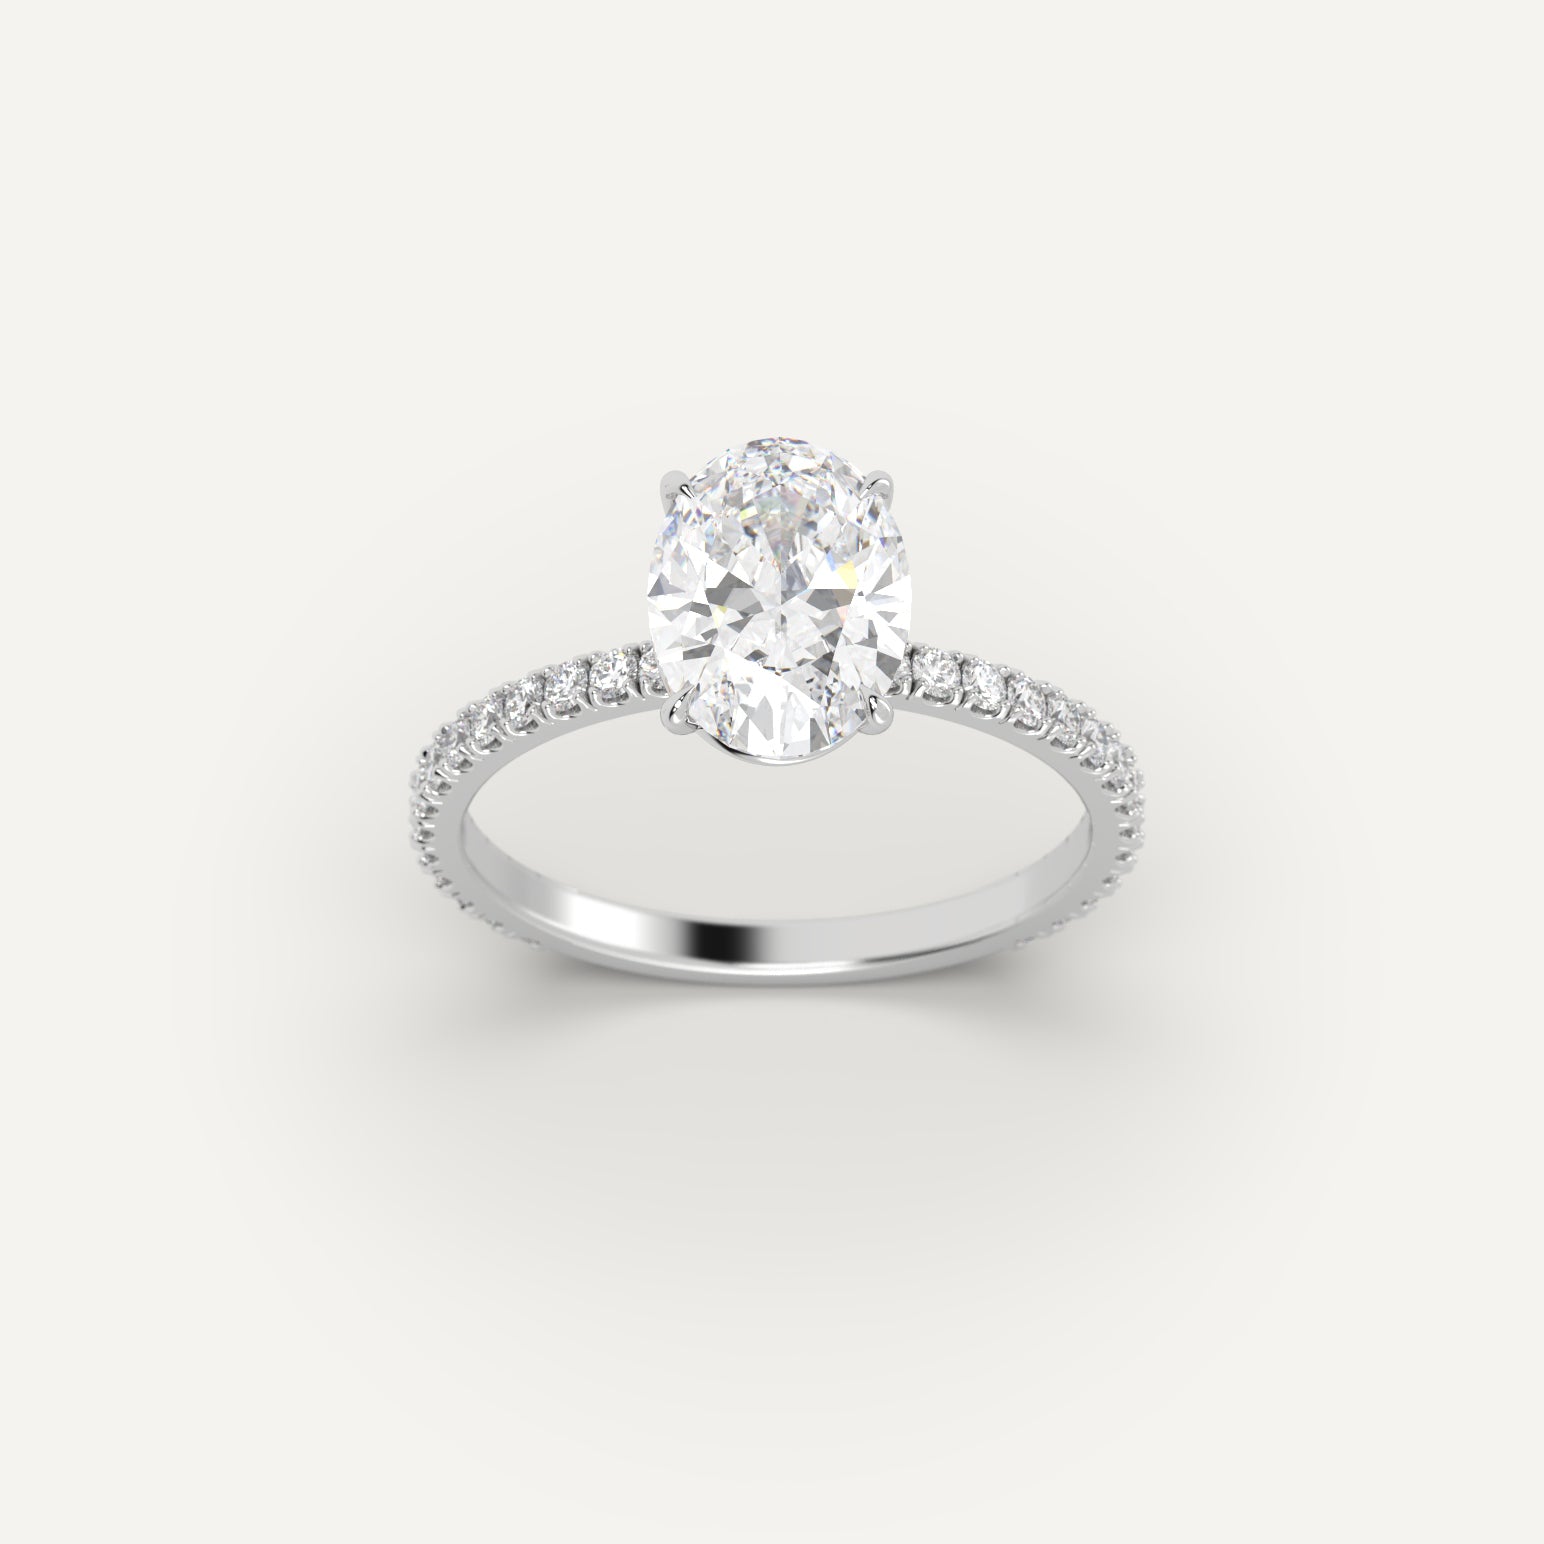 White Gold 2.2 Carat Engagement Ring